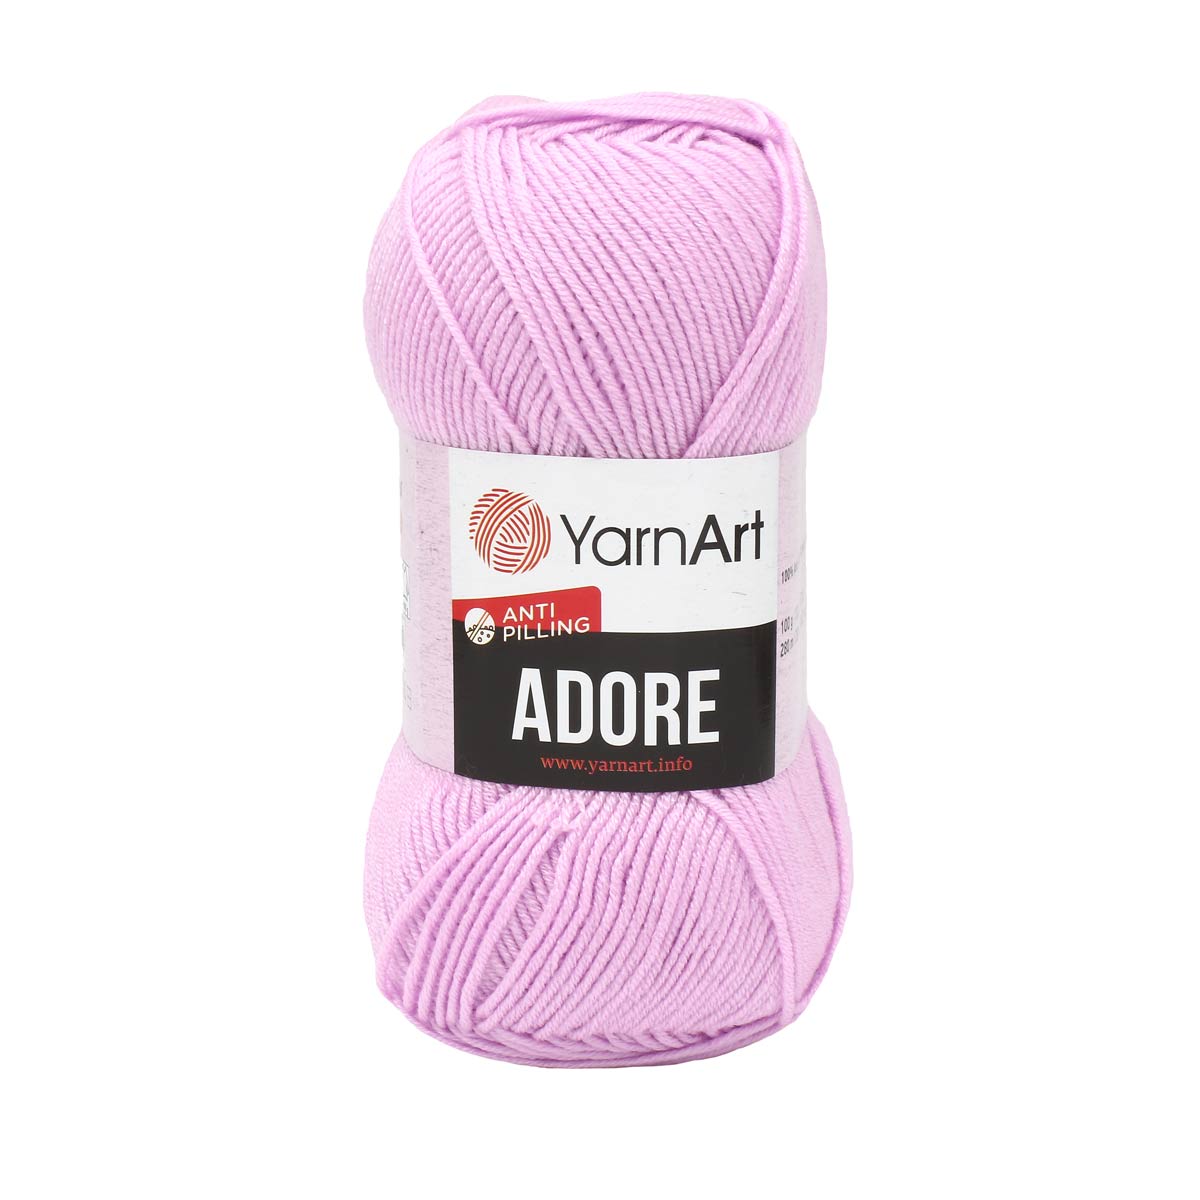 Пряжа для вязания YarnArt Adore 100 гр 280 м акрил с эффектом анти-пиллинга 5 мотков 362 св-сиреневый - фото 5